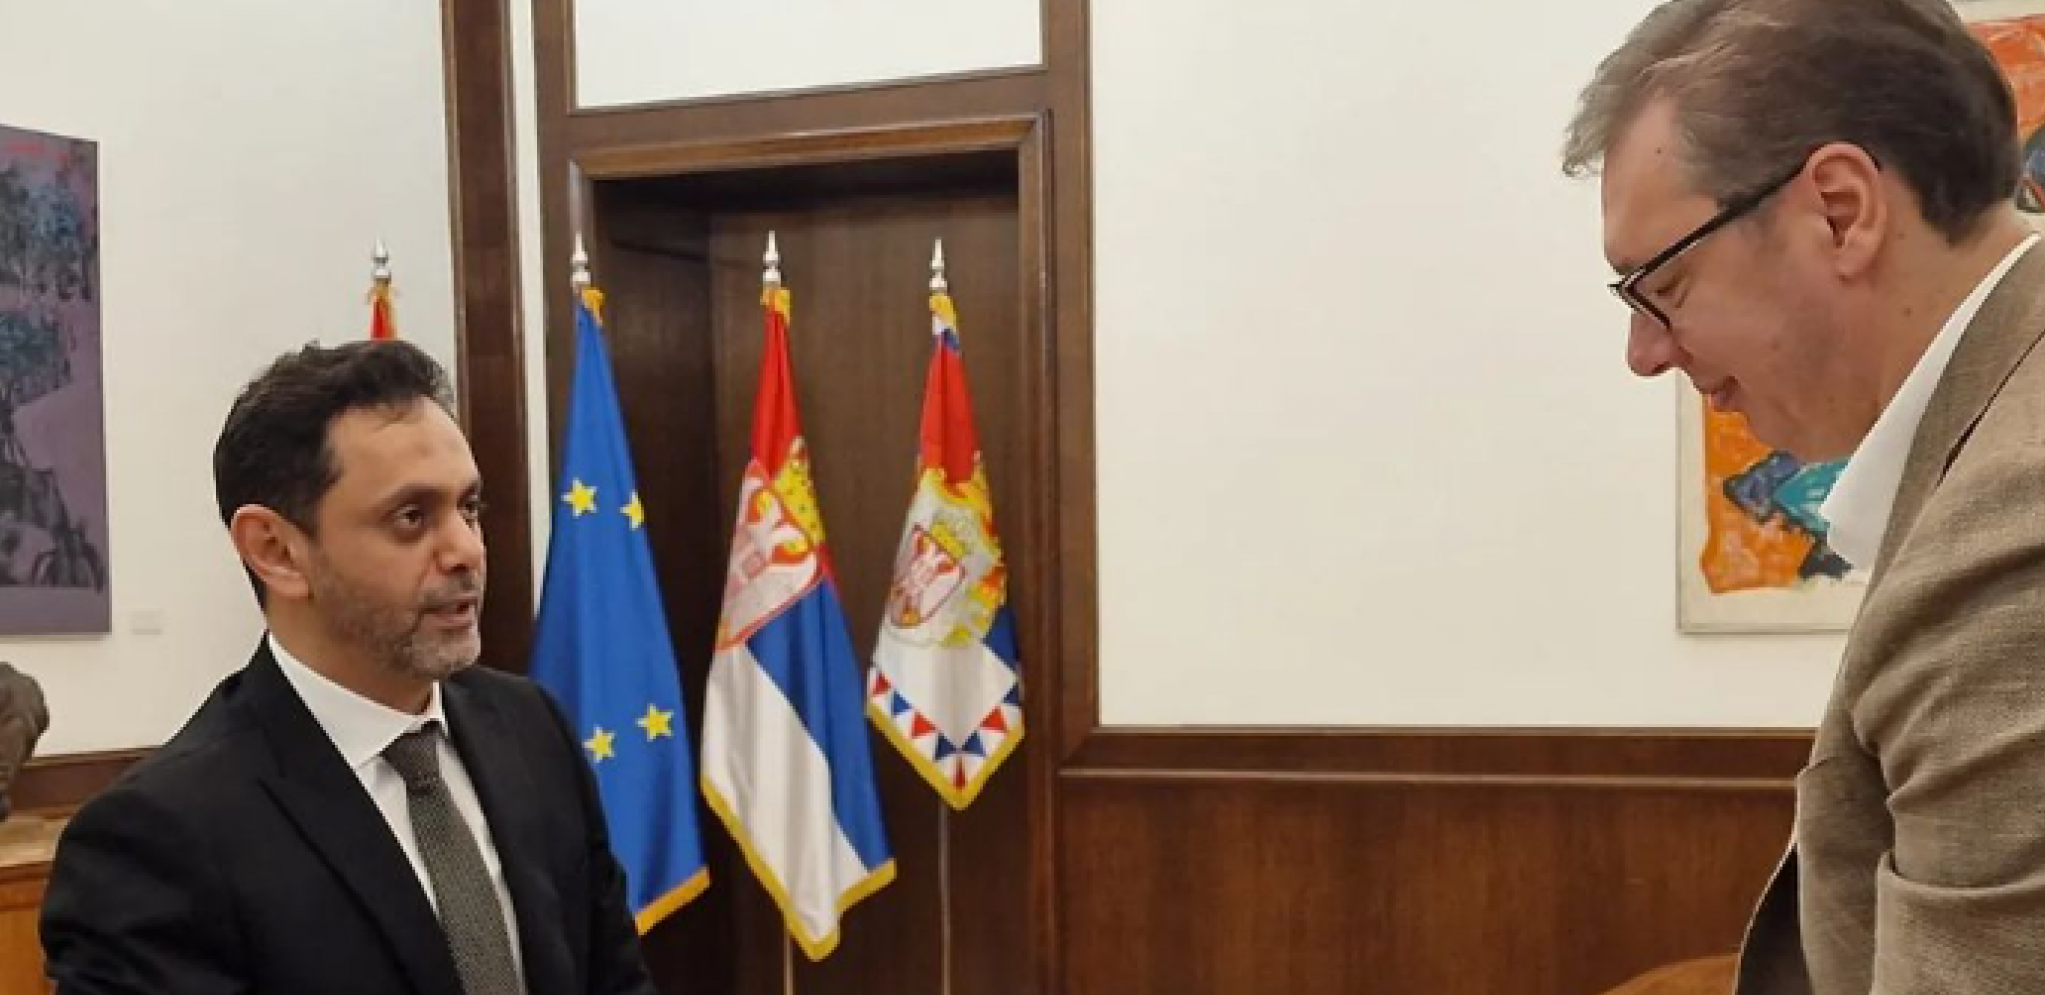 PREDSEDNIK DOBIO VAŽAN POZIV Velika čast za Vučića i Srbiju! (FOTO)